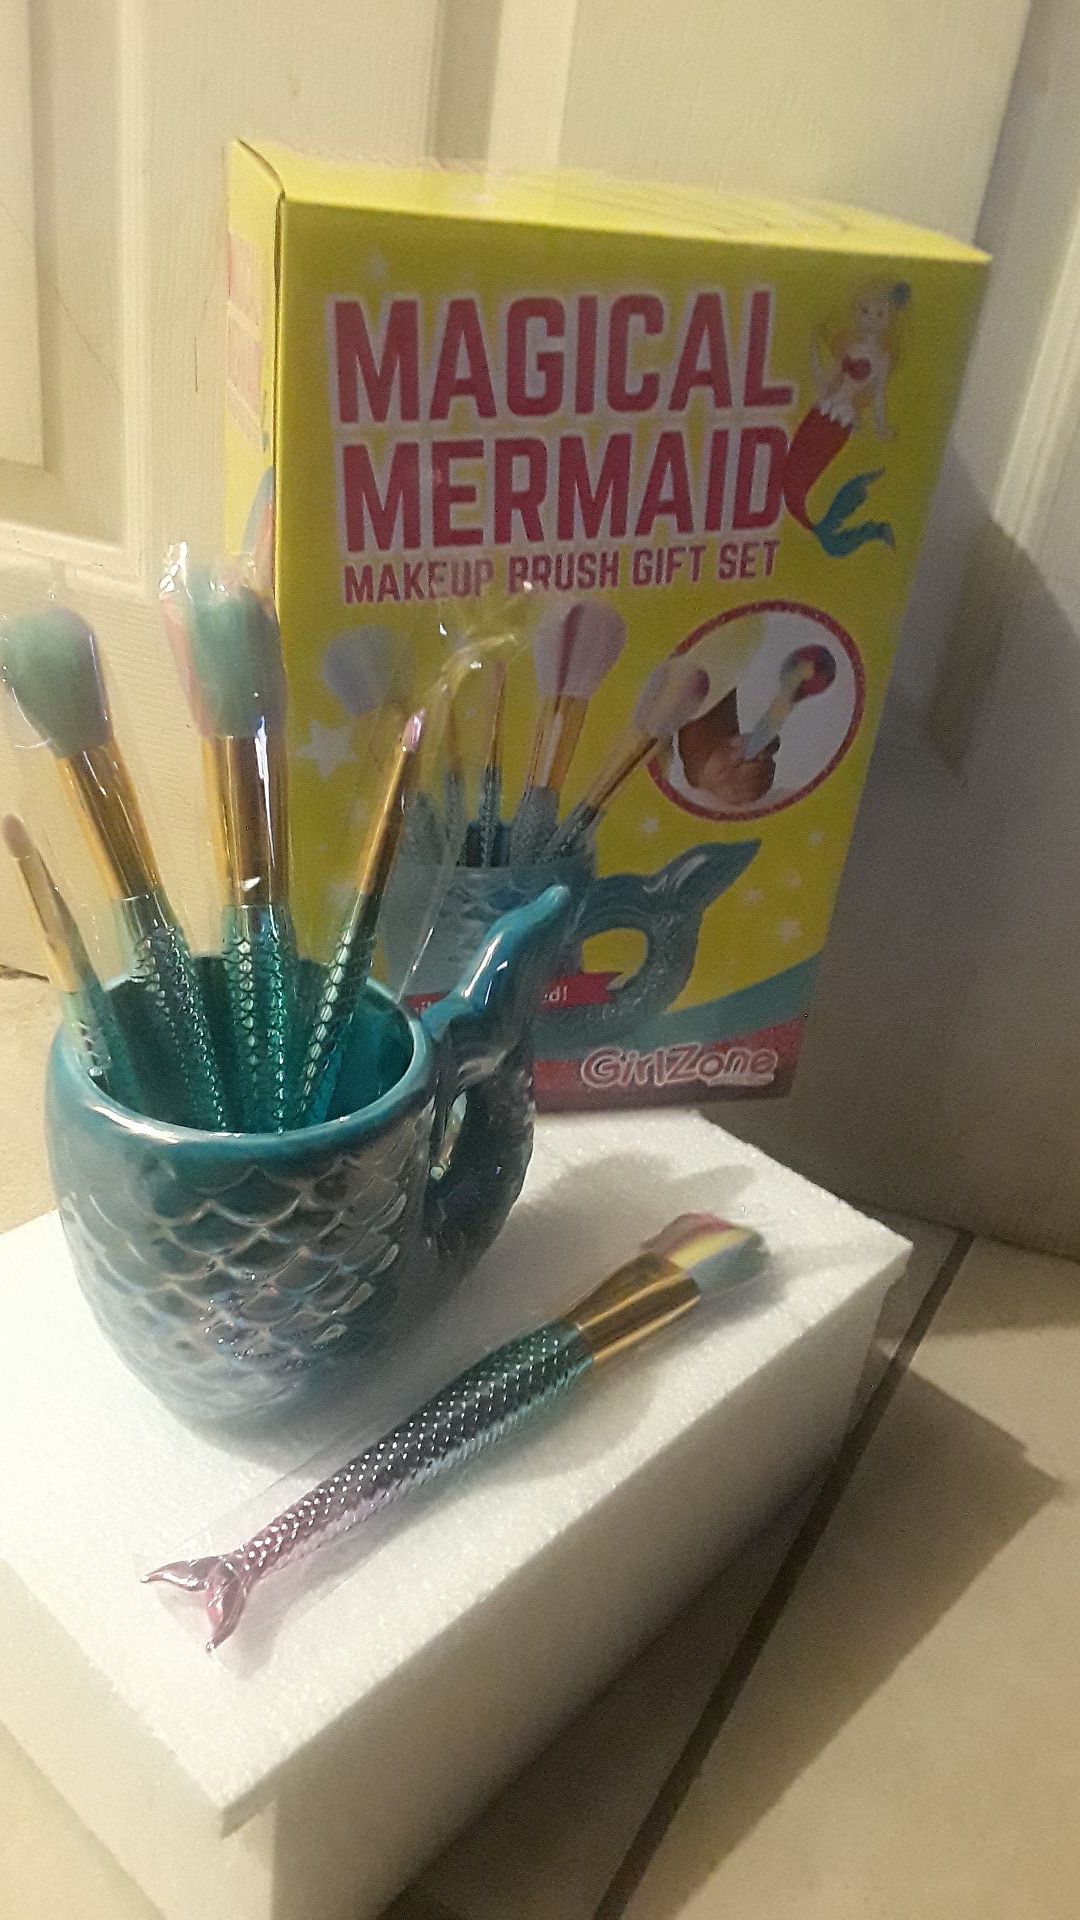 Makeup Brush gift set de 5 mermado magical